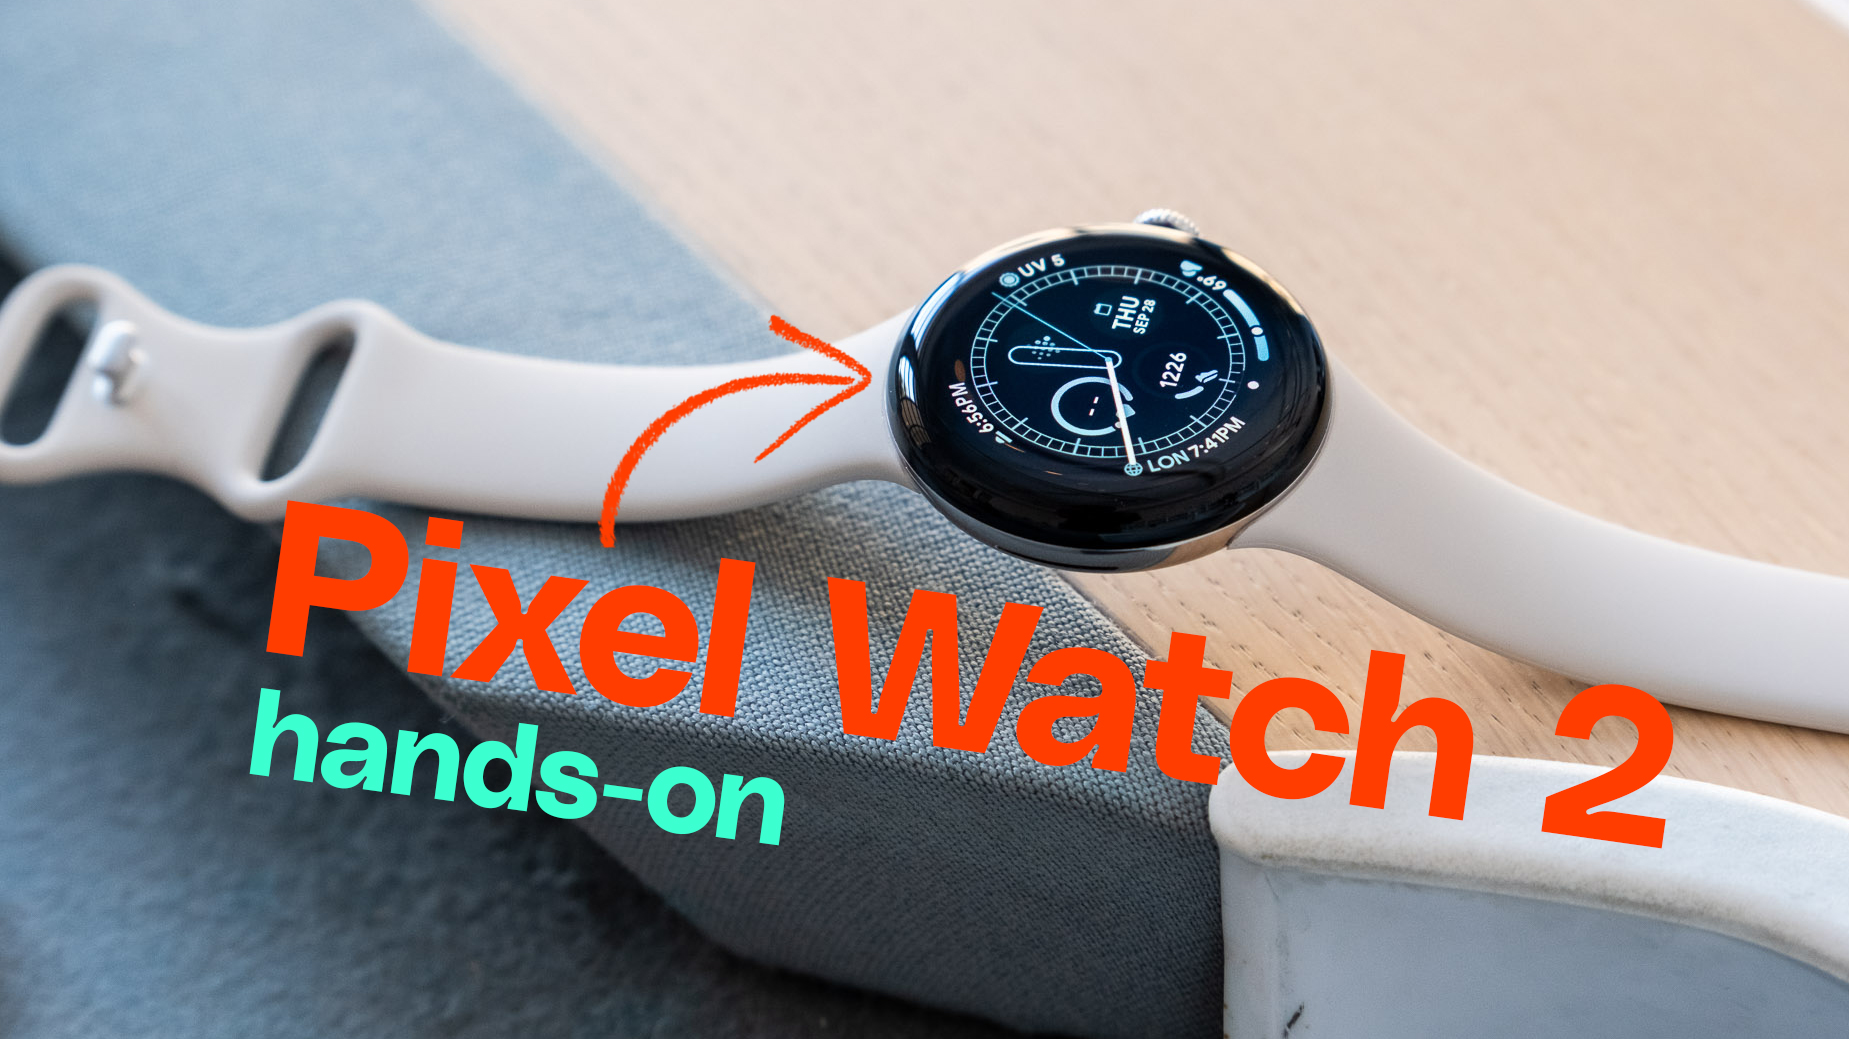 Pixel Watch Hands-on: Google's Pixel ecosystem starts today